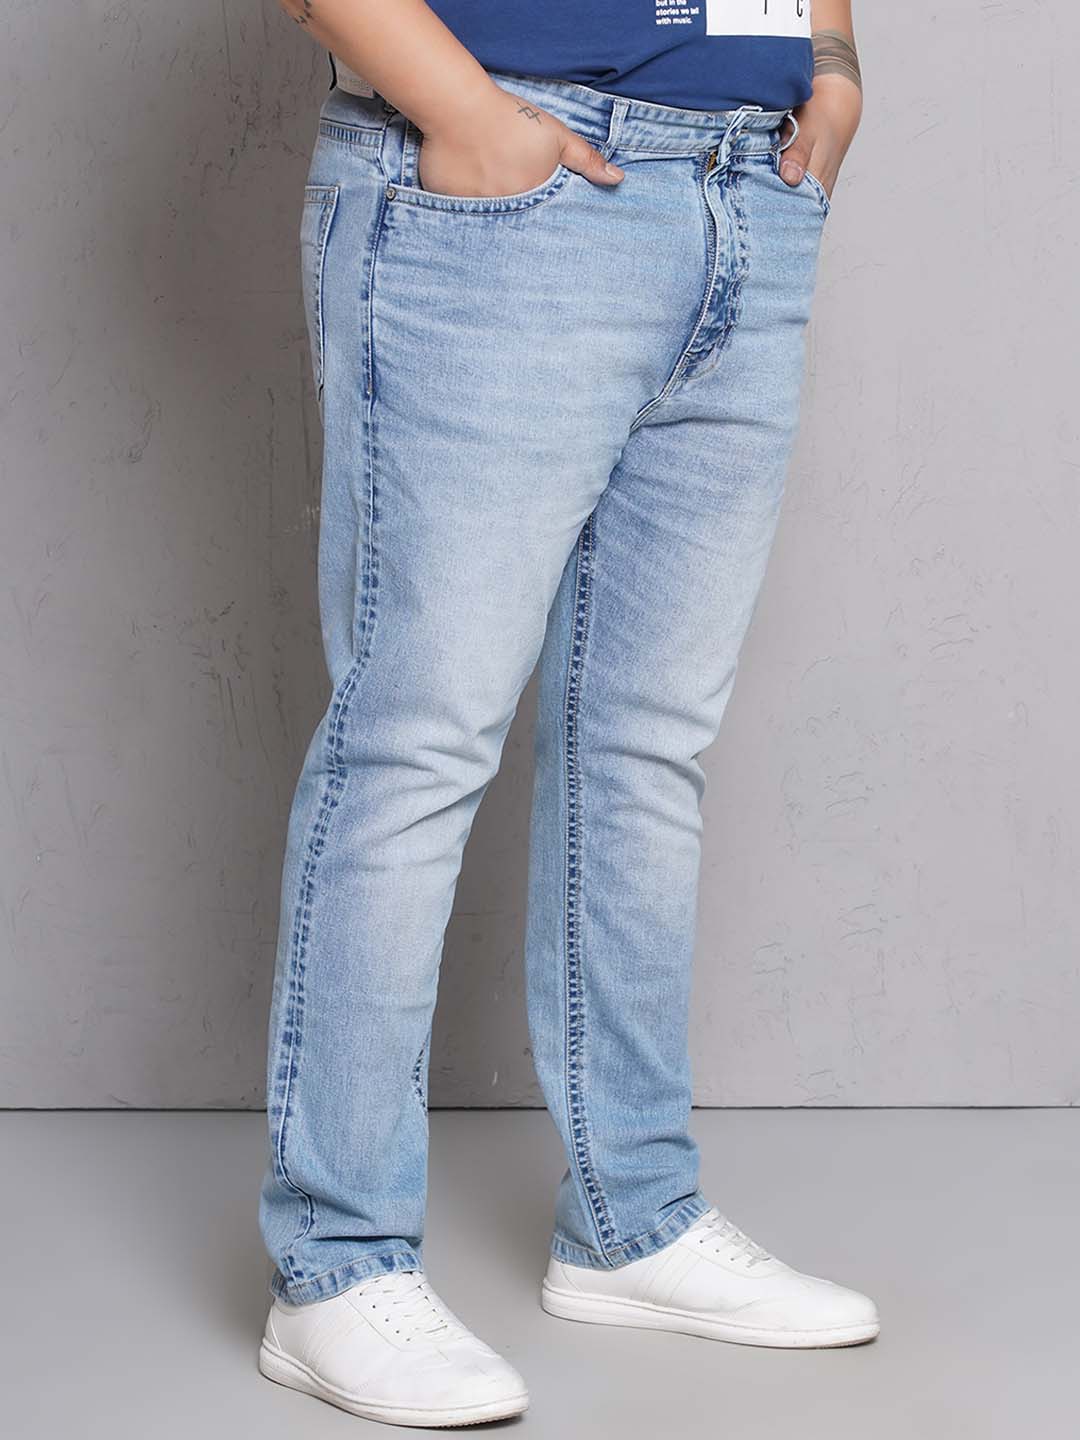 bottomwear/jeans/JPJ27118/jpj27118-4.jpg